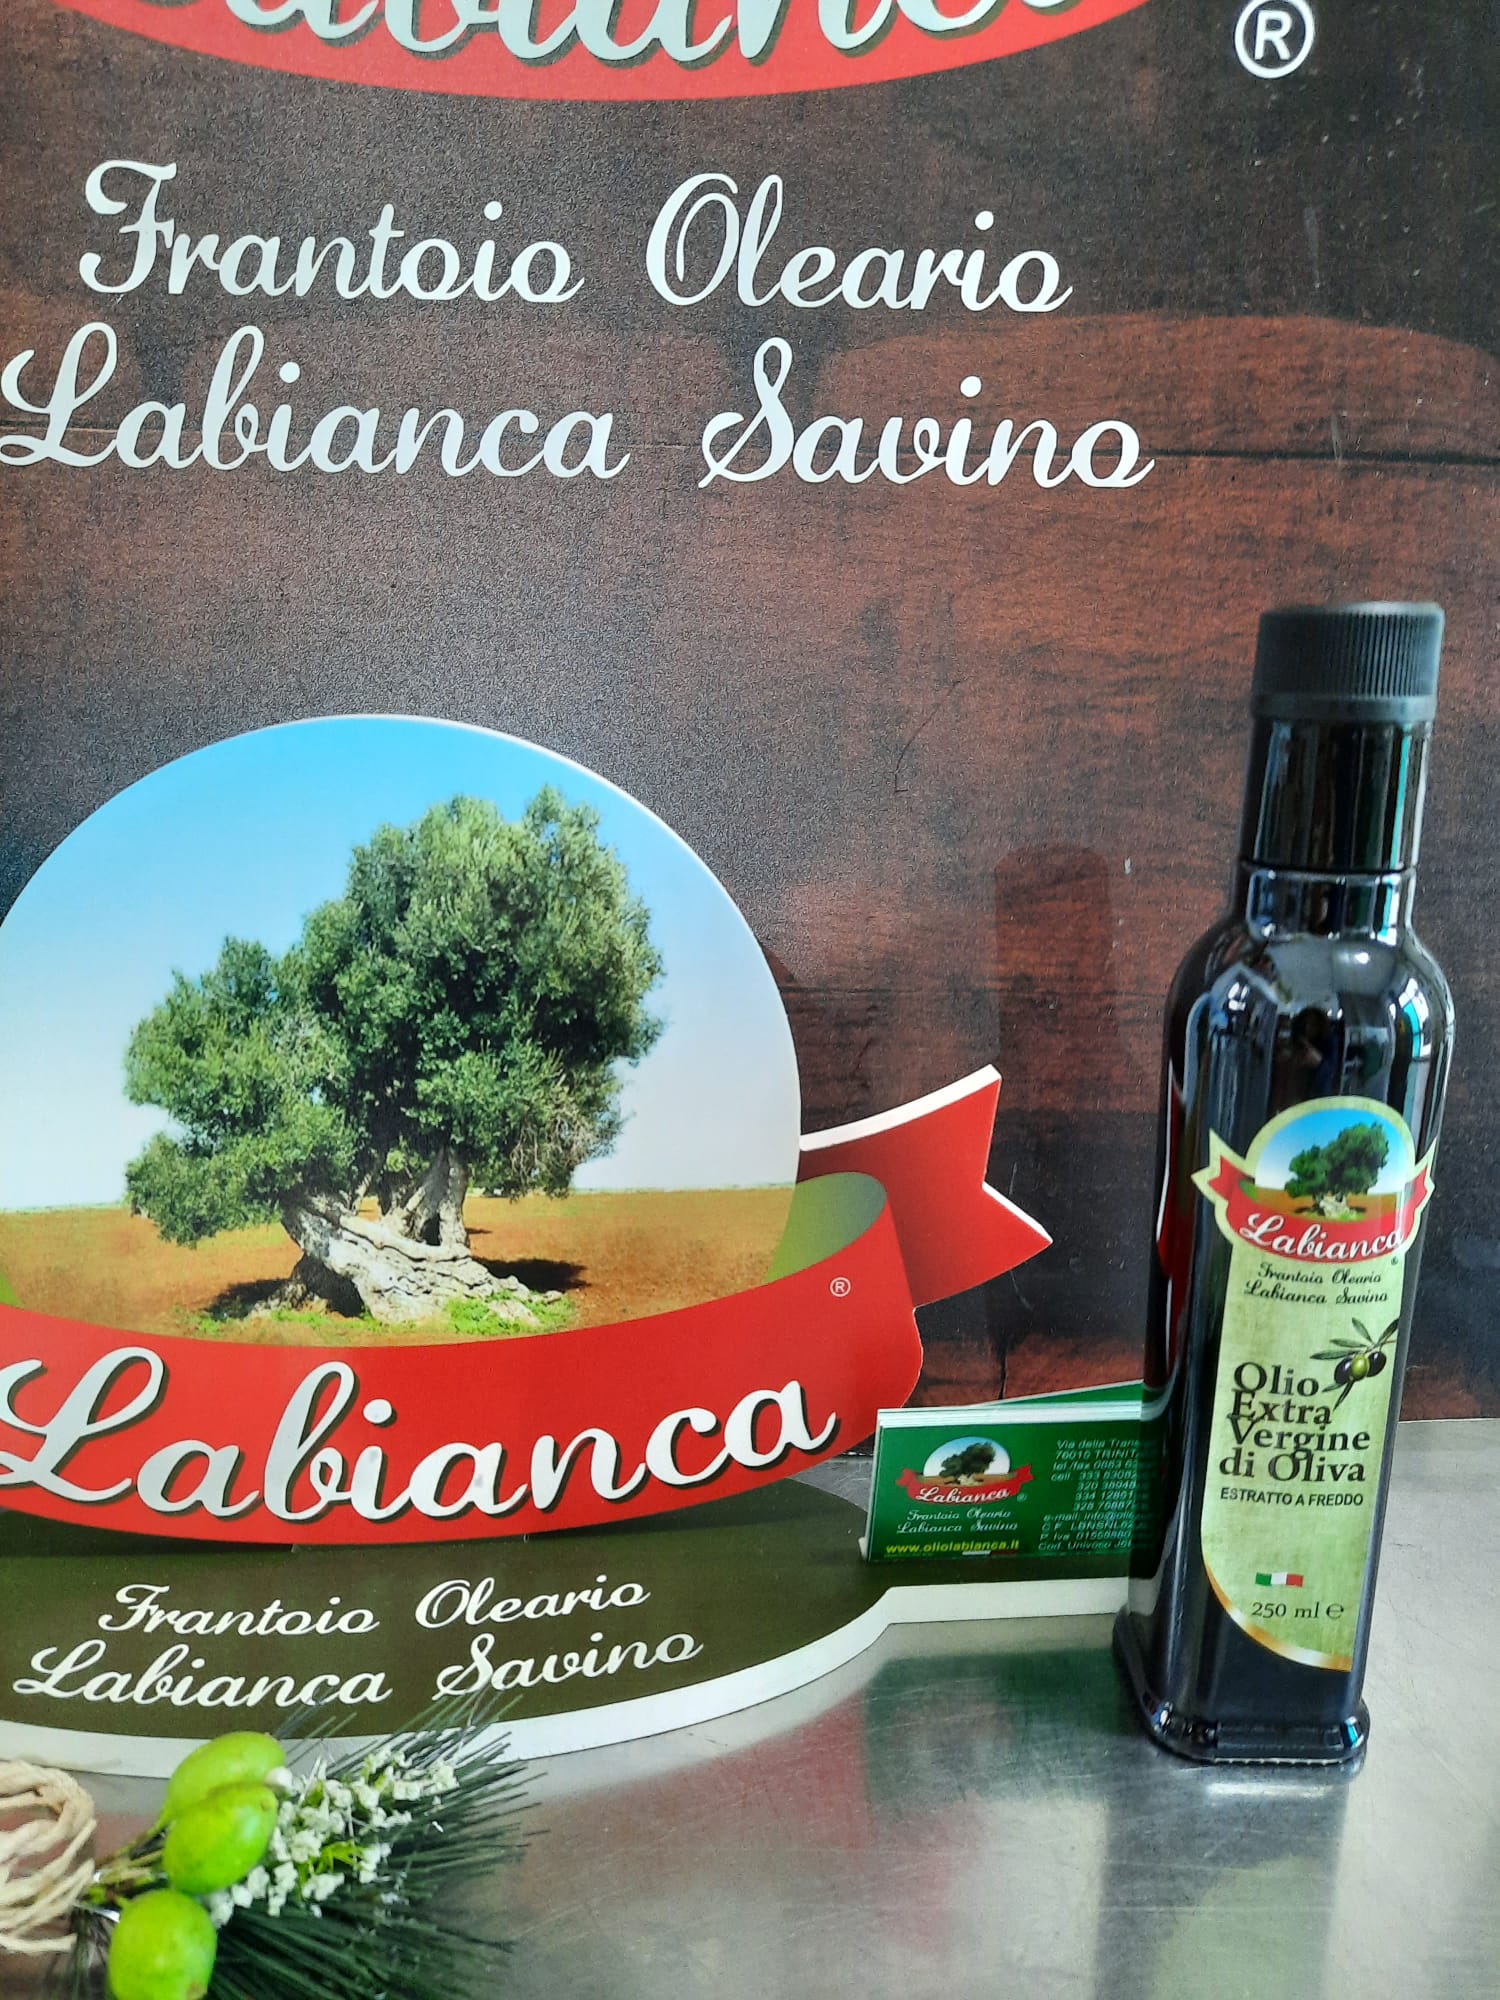 Box 6 marasche da 250 ml - Frantoio Oleario Labianca Savino